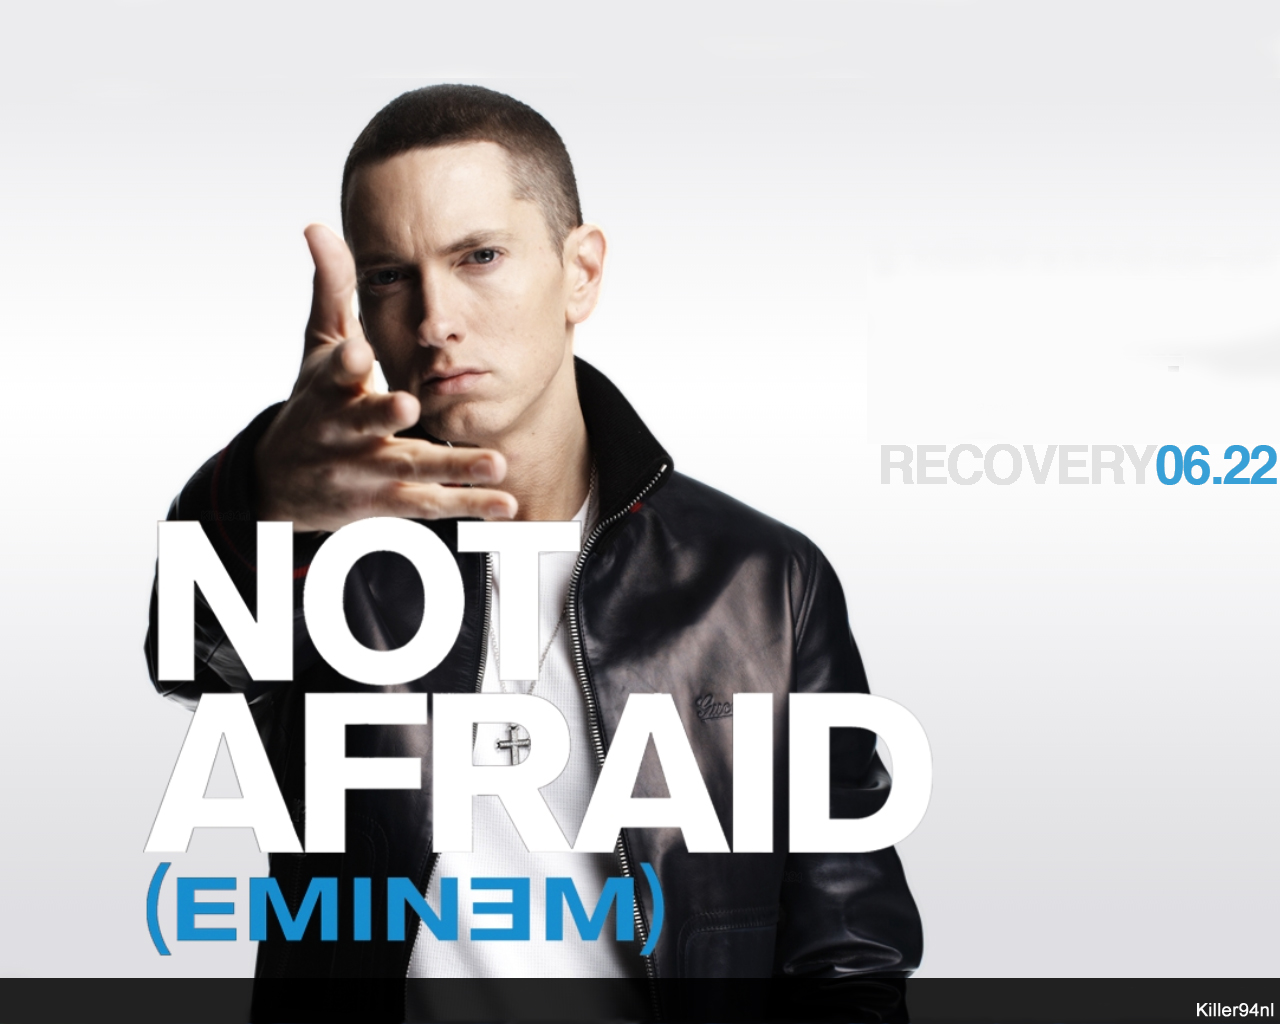 Descargar fondos de escritorio de Eminem HD